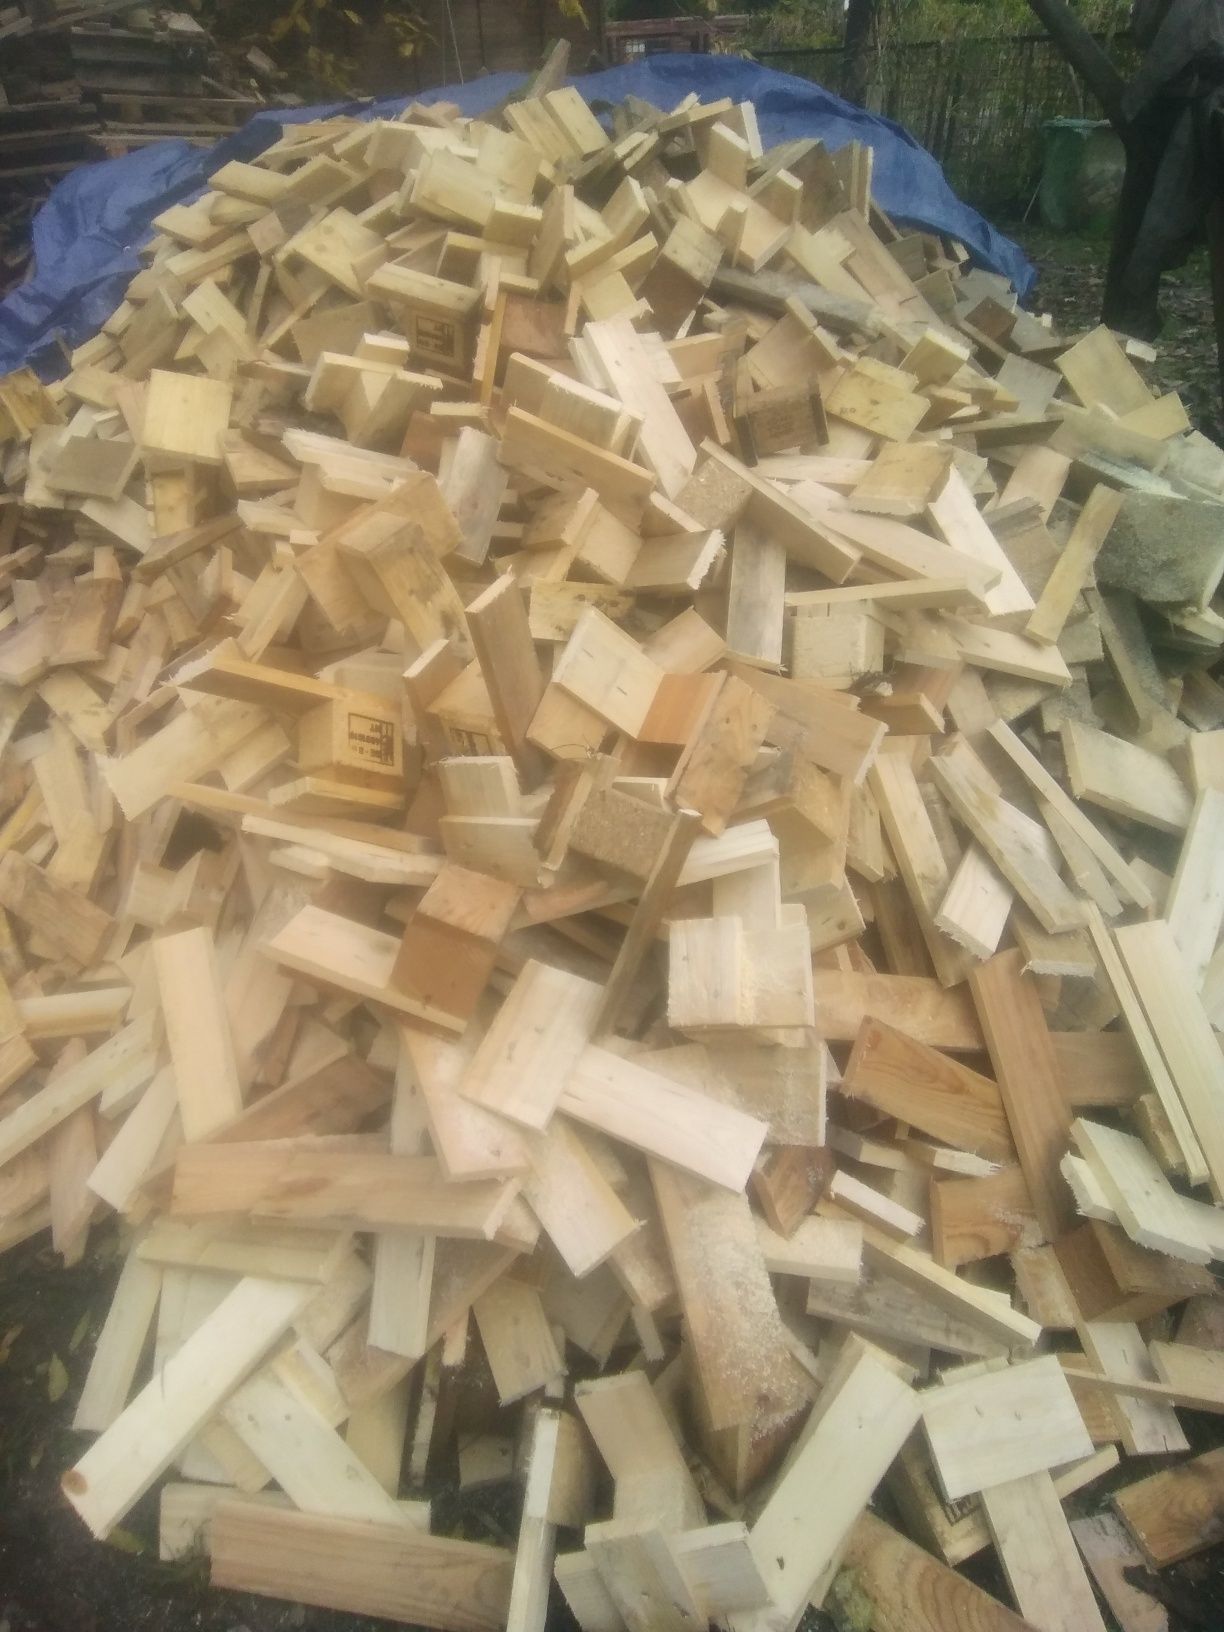 Drewno drzewo opał pocięte palety 150  PLN m3, nie impregnowane